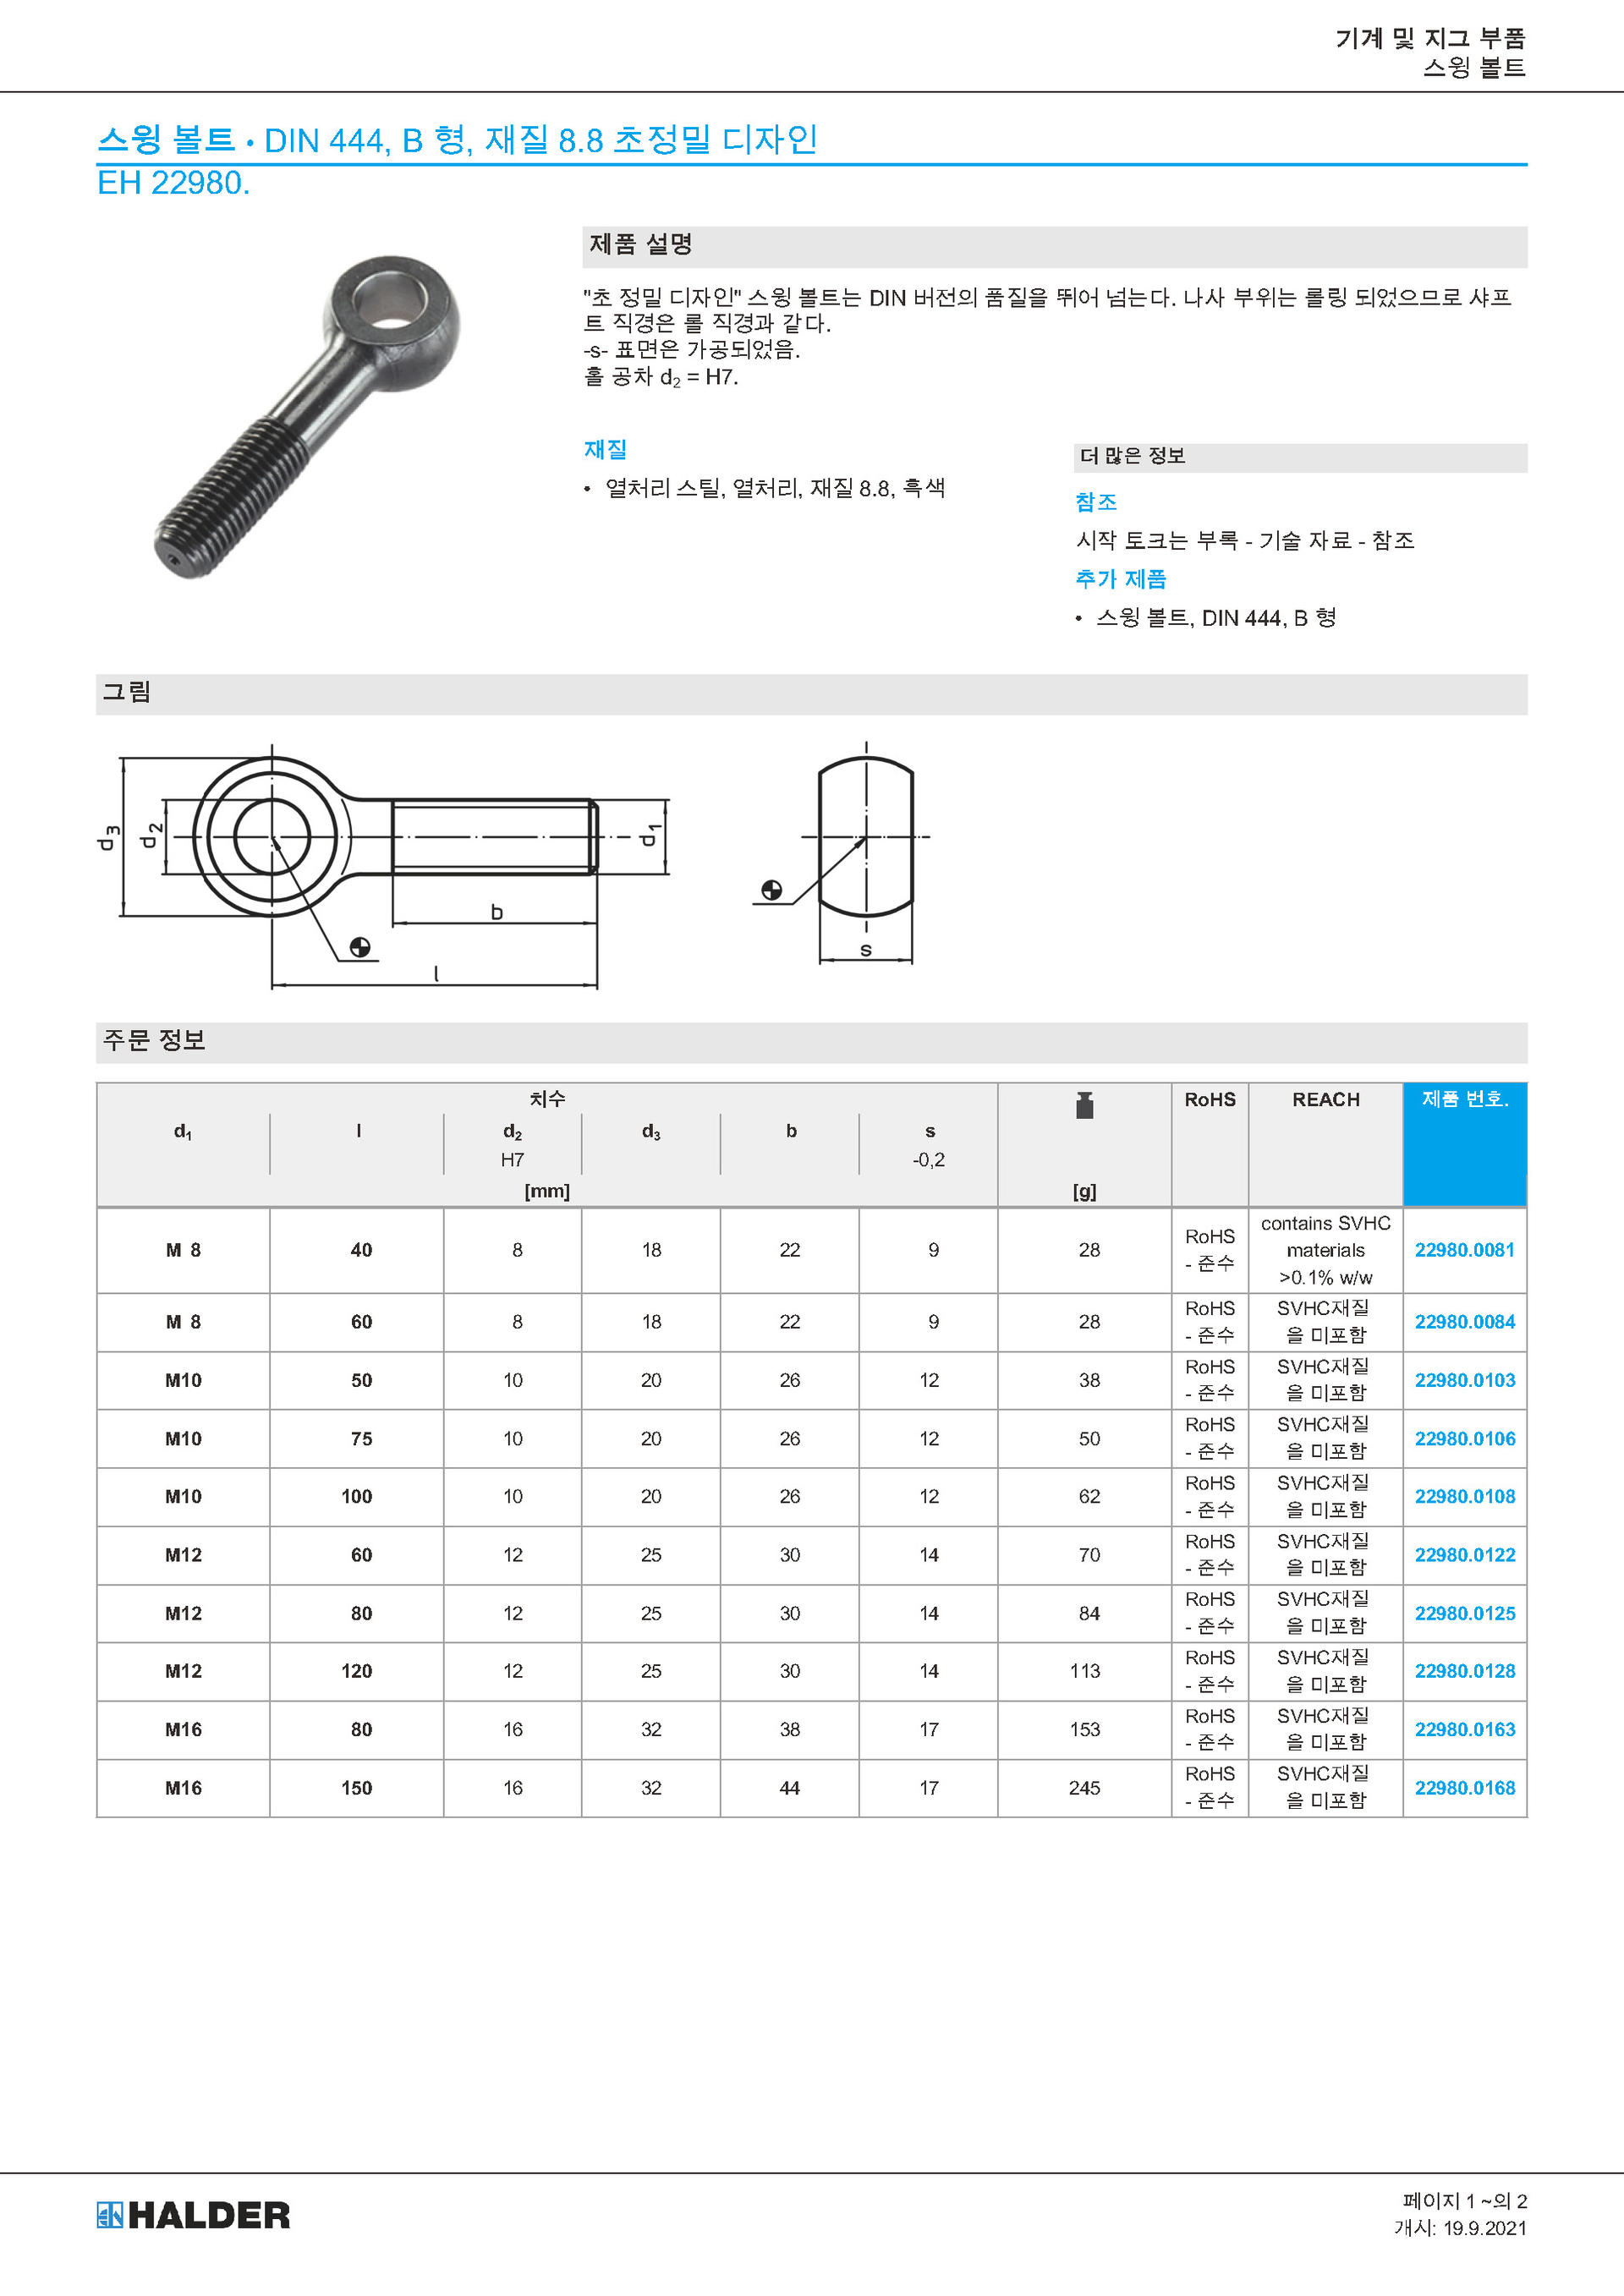 스윙 볼트 Din444, B 형, 재질 8.8 초정밀 디자인 / Eh 22980. : 할더 룀헬드 코리아(주) 한국지사